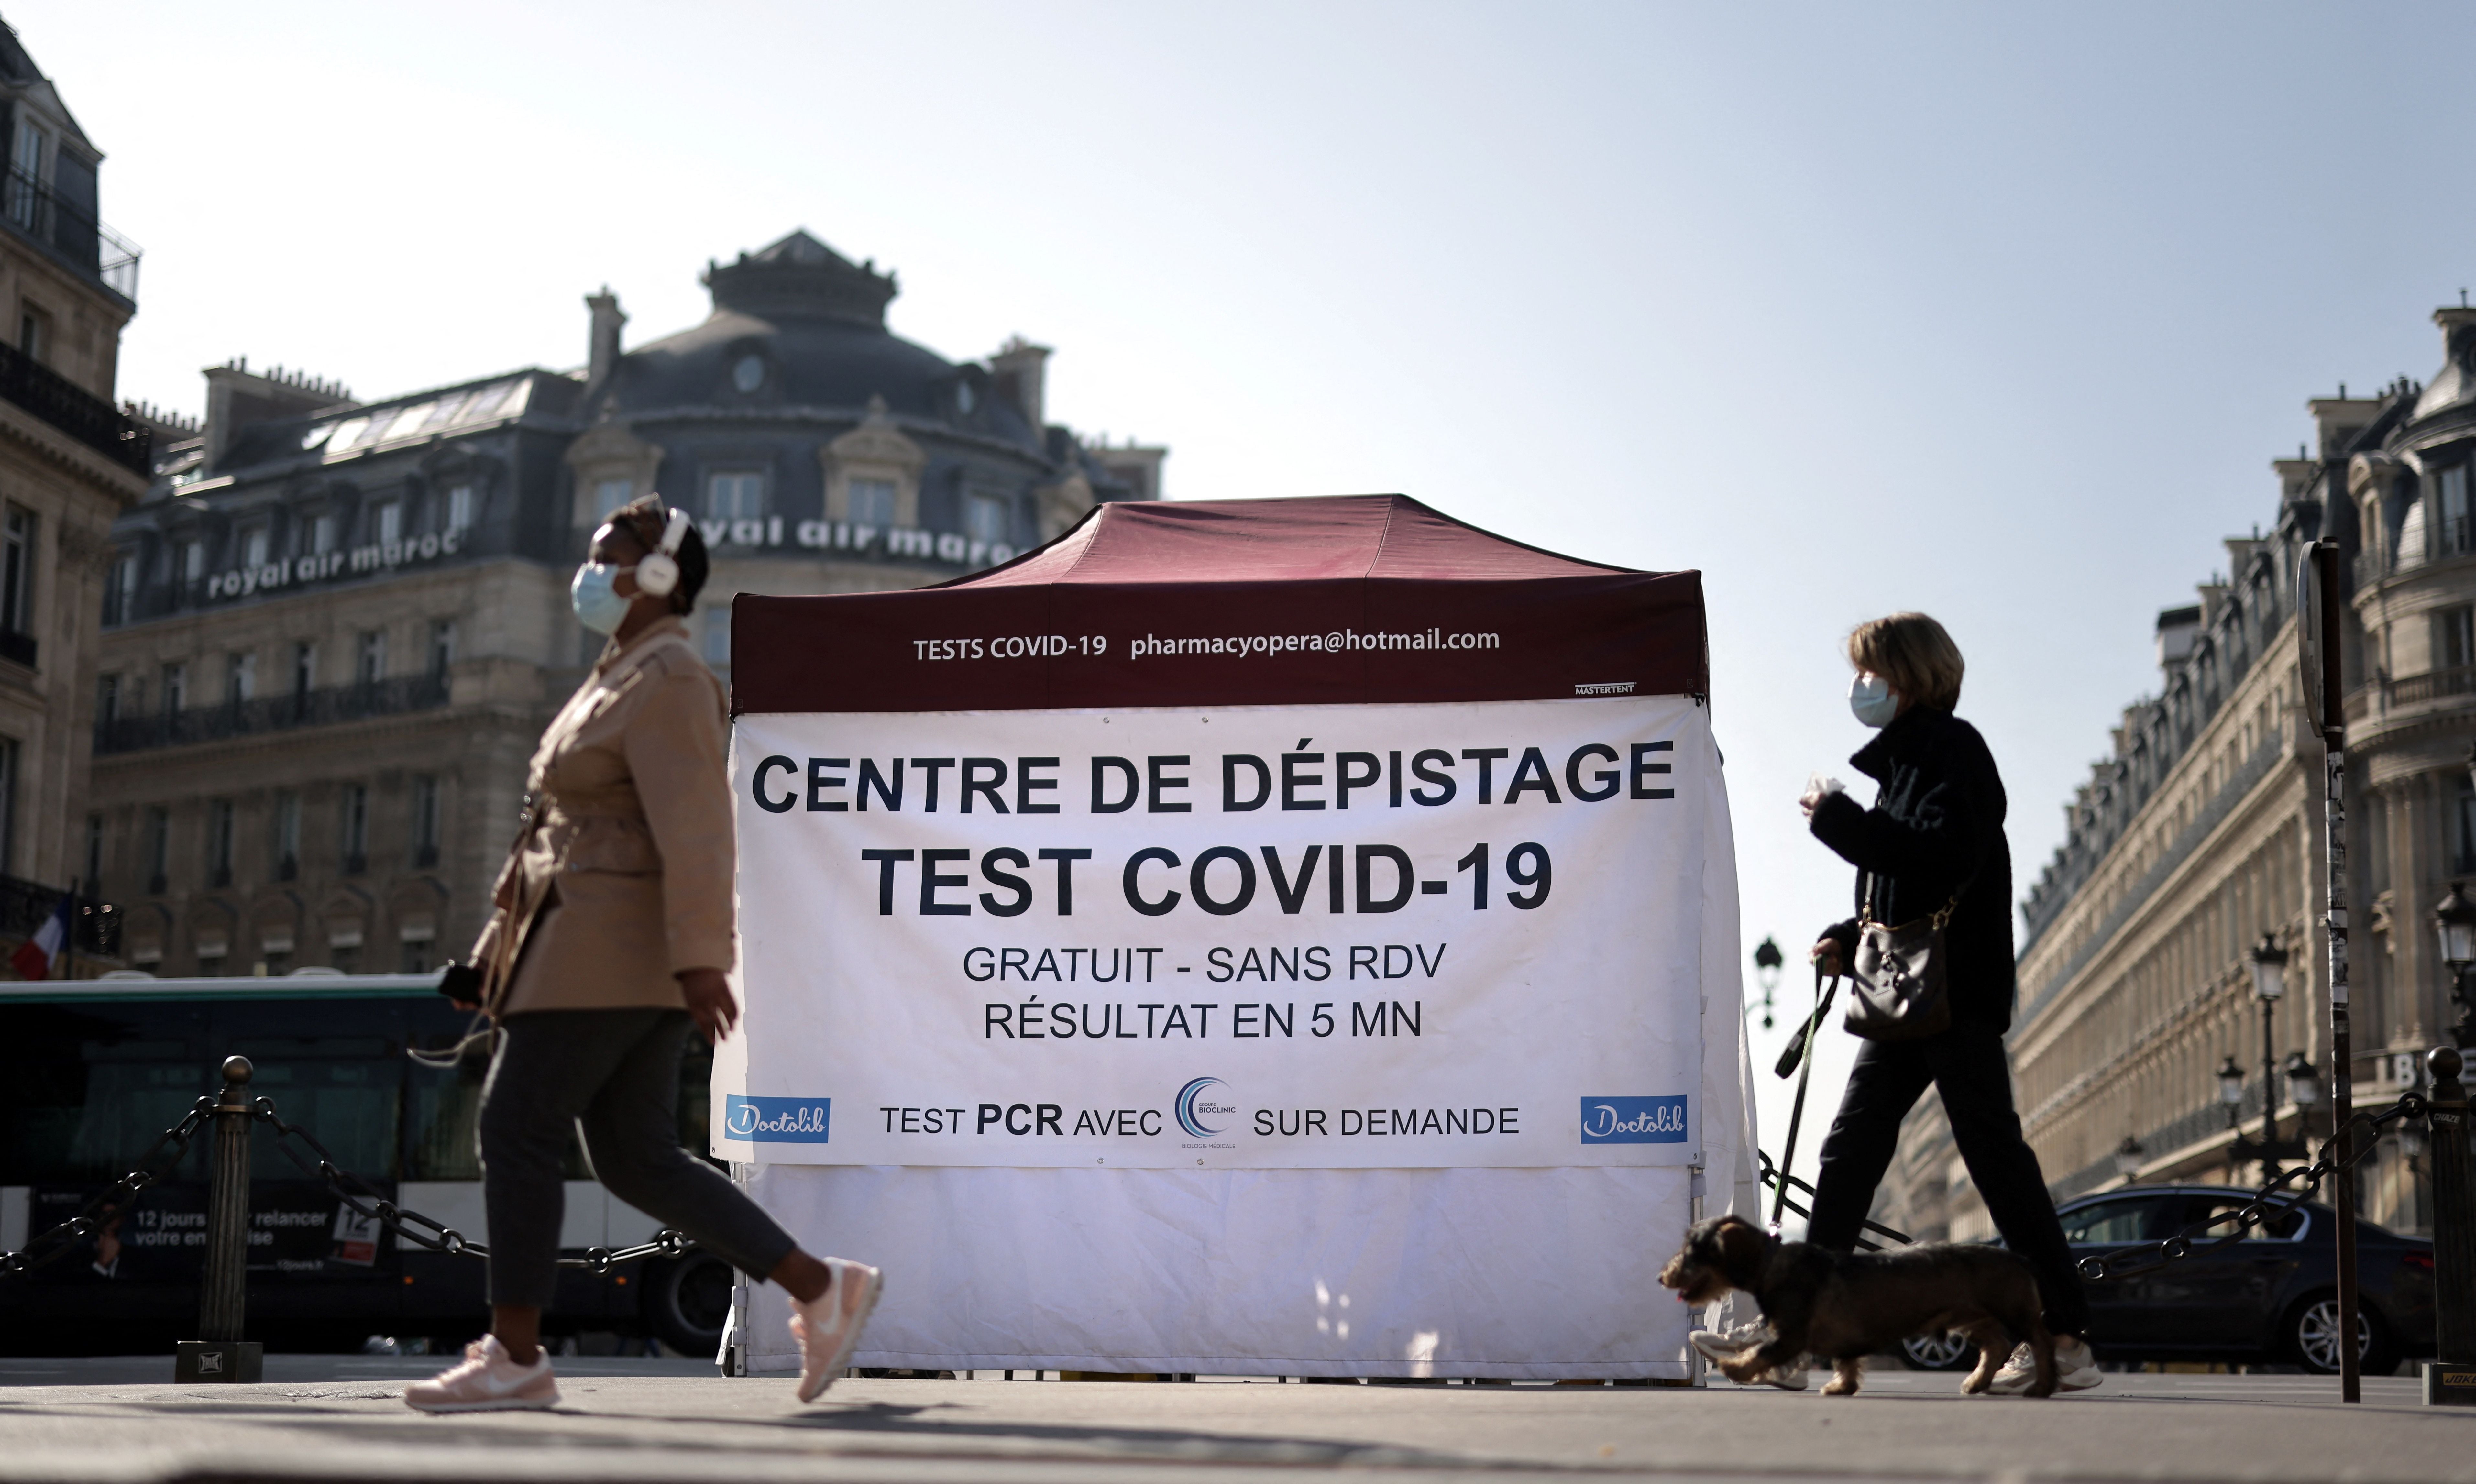 Coronavirus testing centre in Paris